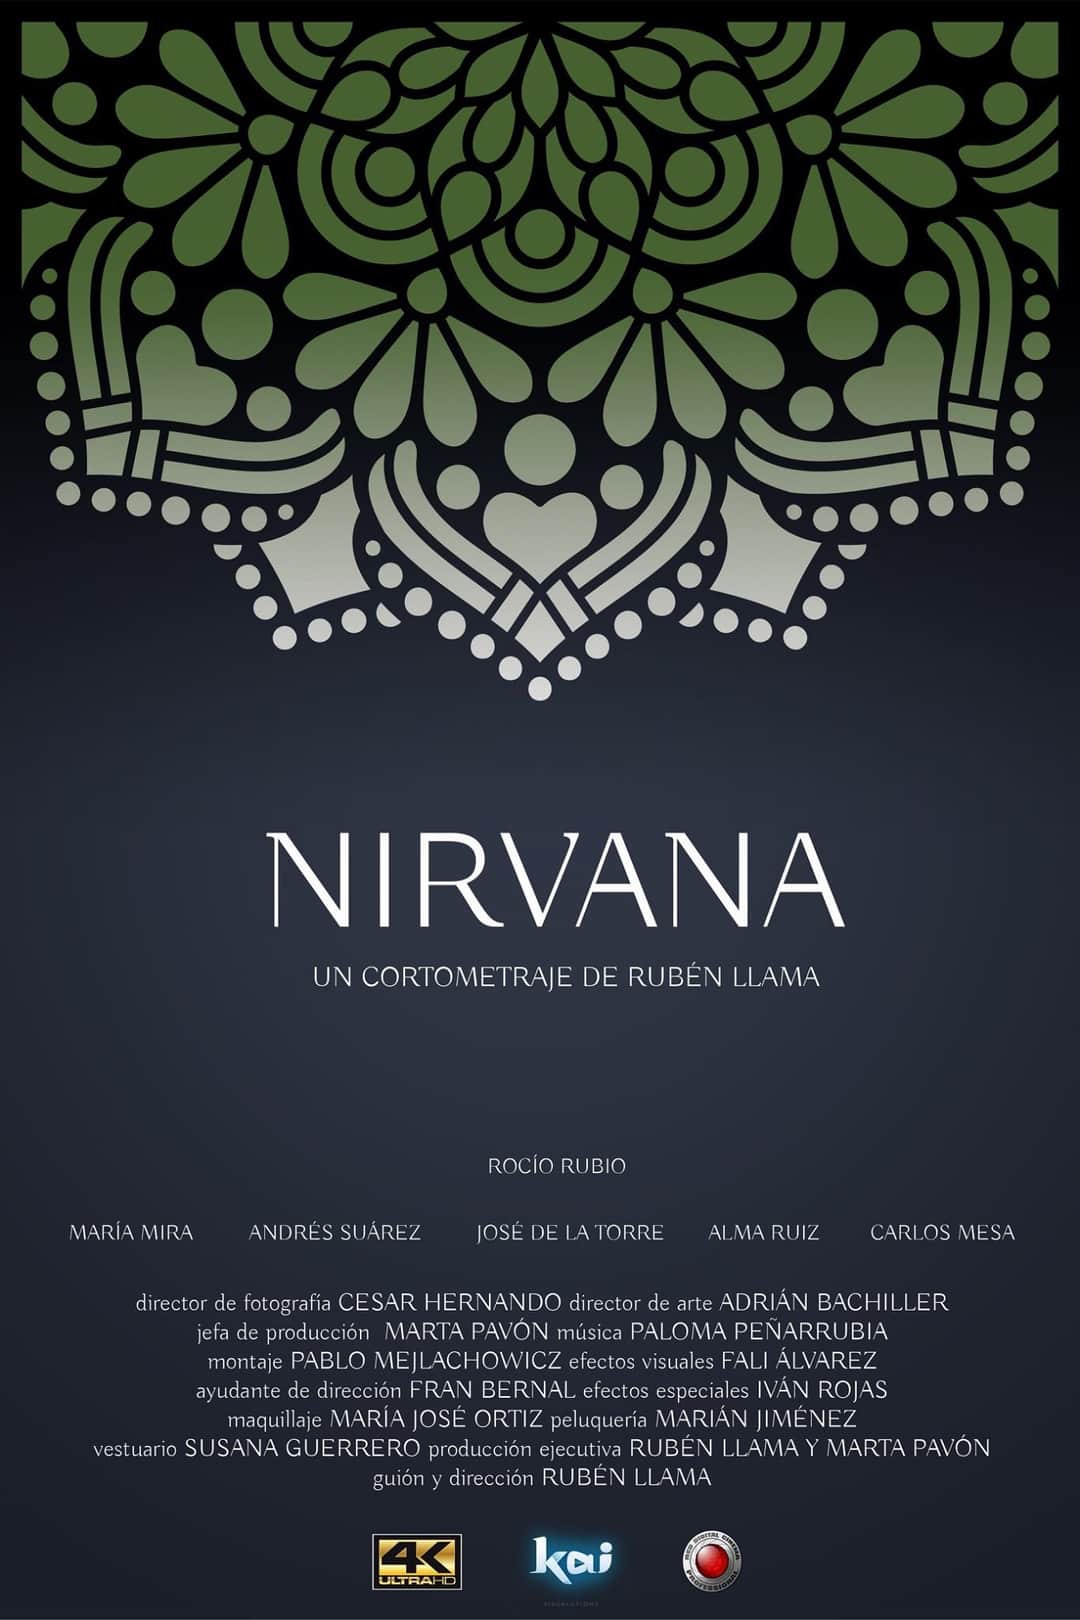 Cartel del cortometraje Nirvana, compuesto por medio mandala verde en la parte superior, sobre fondo azul oscuro